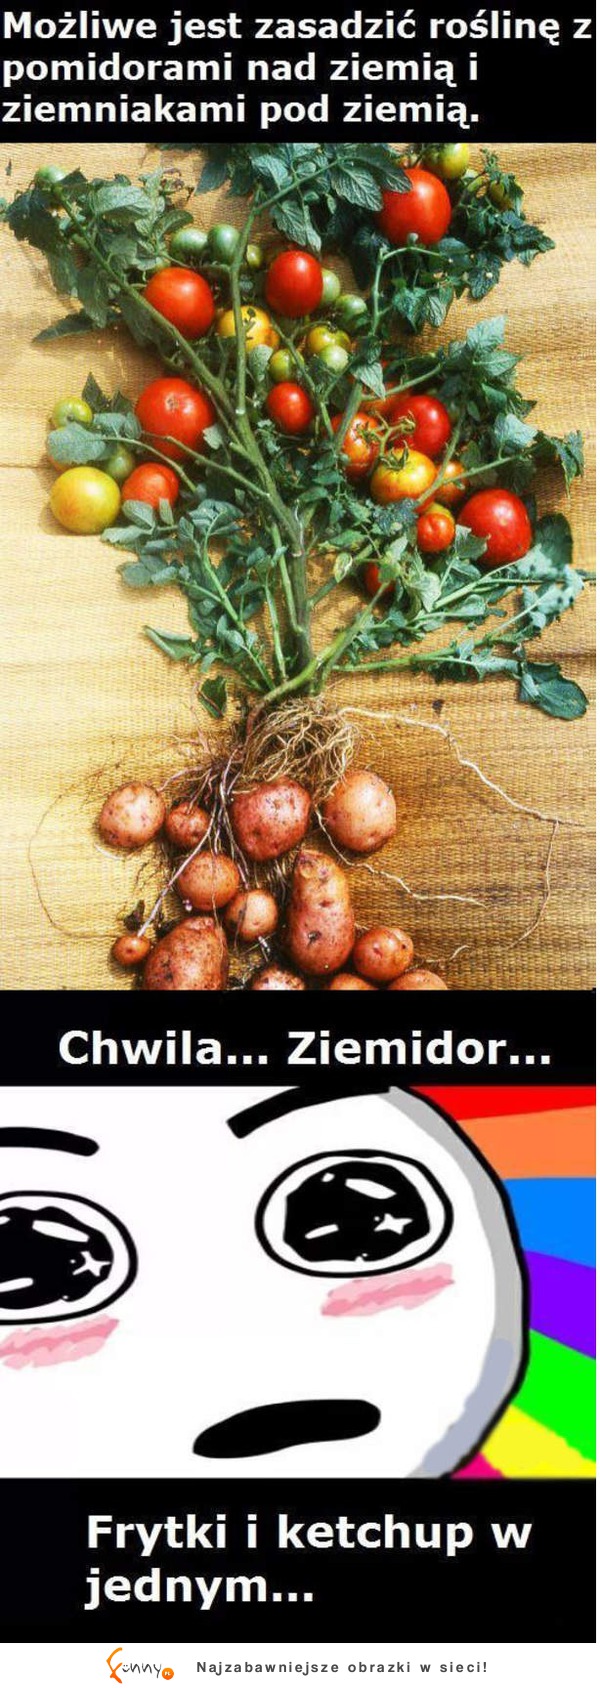 Możliwe jest zasadzić roślinę z pomidorami na dziemia i ziemniakami pod ziemią :D